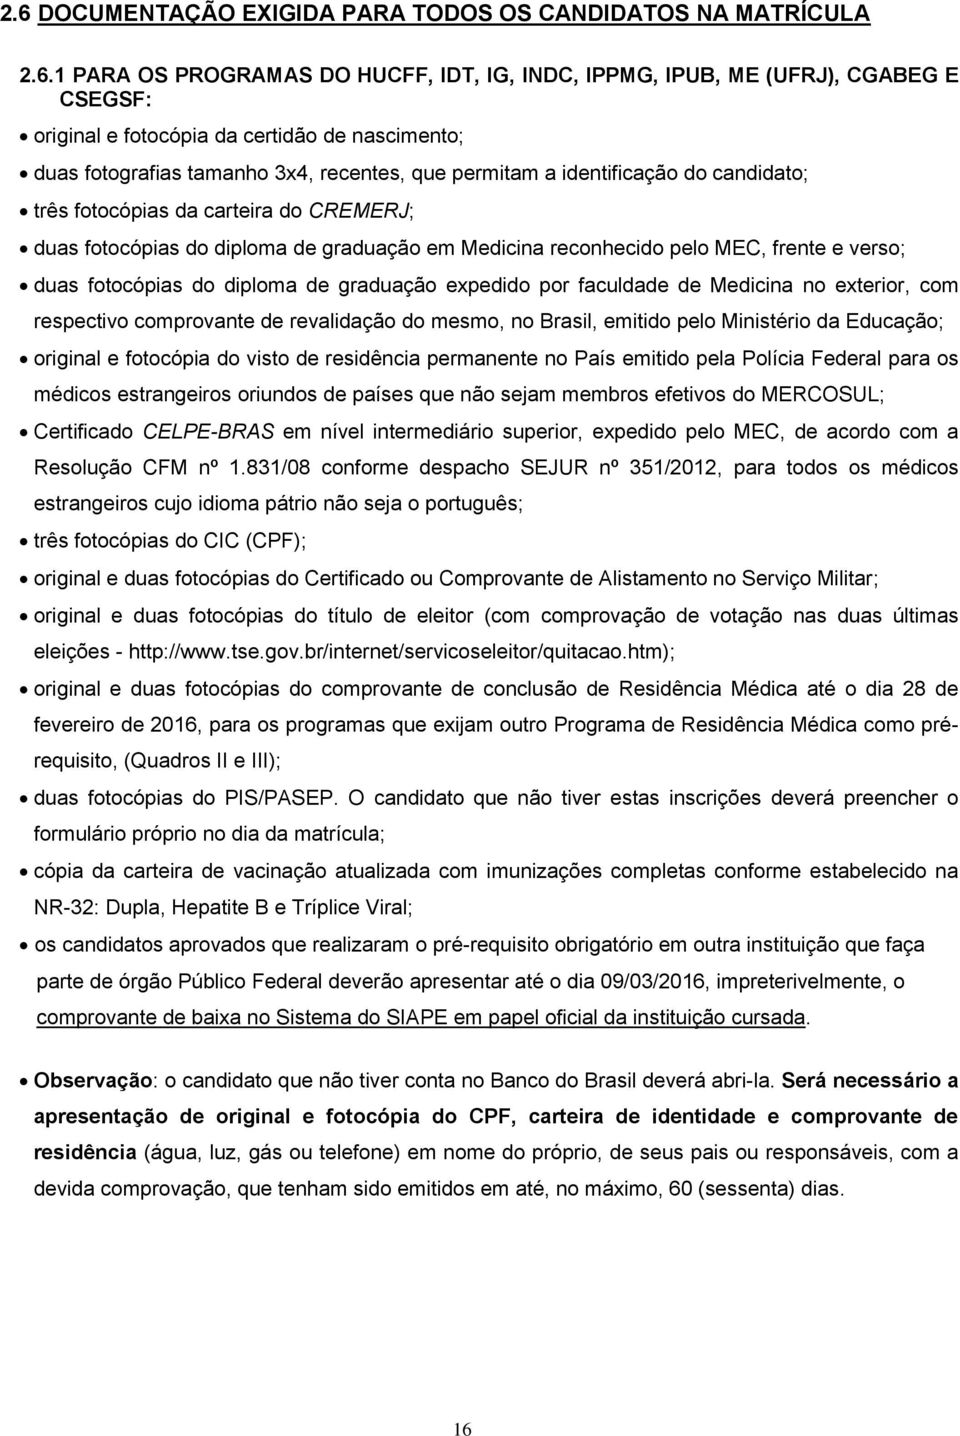 pelo MEC, frente e verso; duas fotocópias do diploma de graduação expedido por faculdade de Medicina no exterior, com respectivo comprovante de revalidação do mesmo, no Brasil, emitido pelo